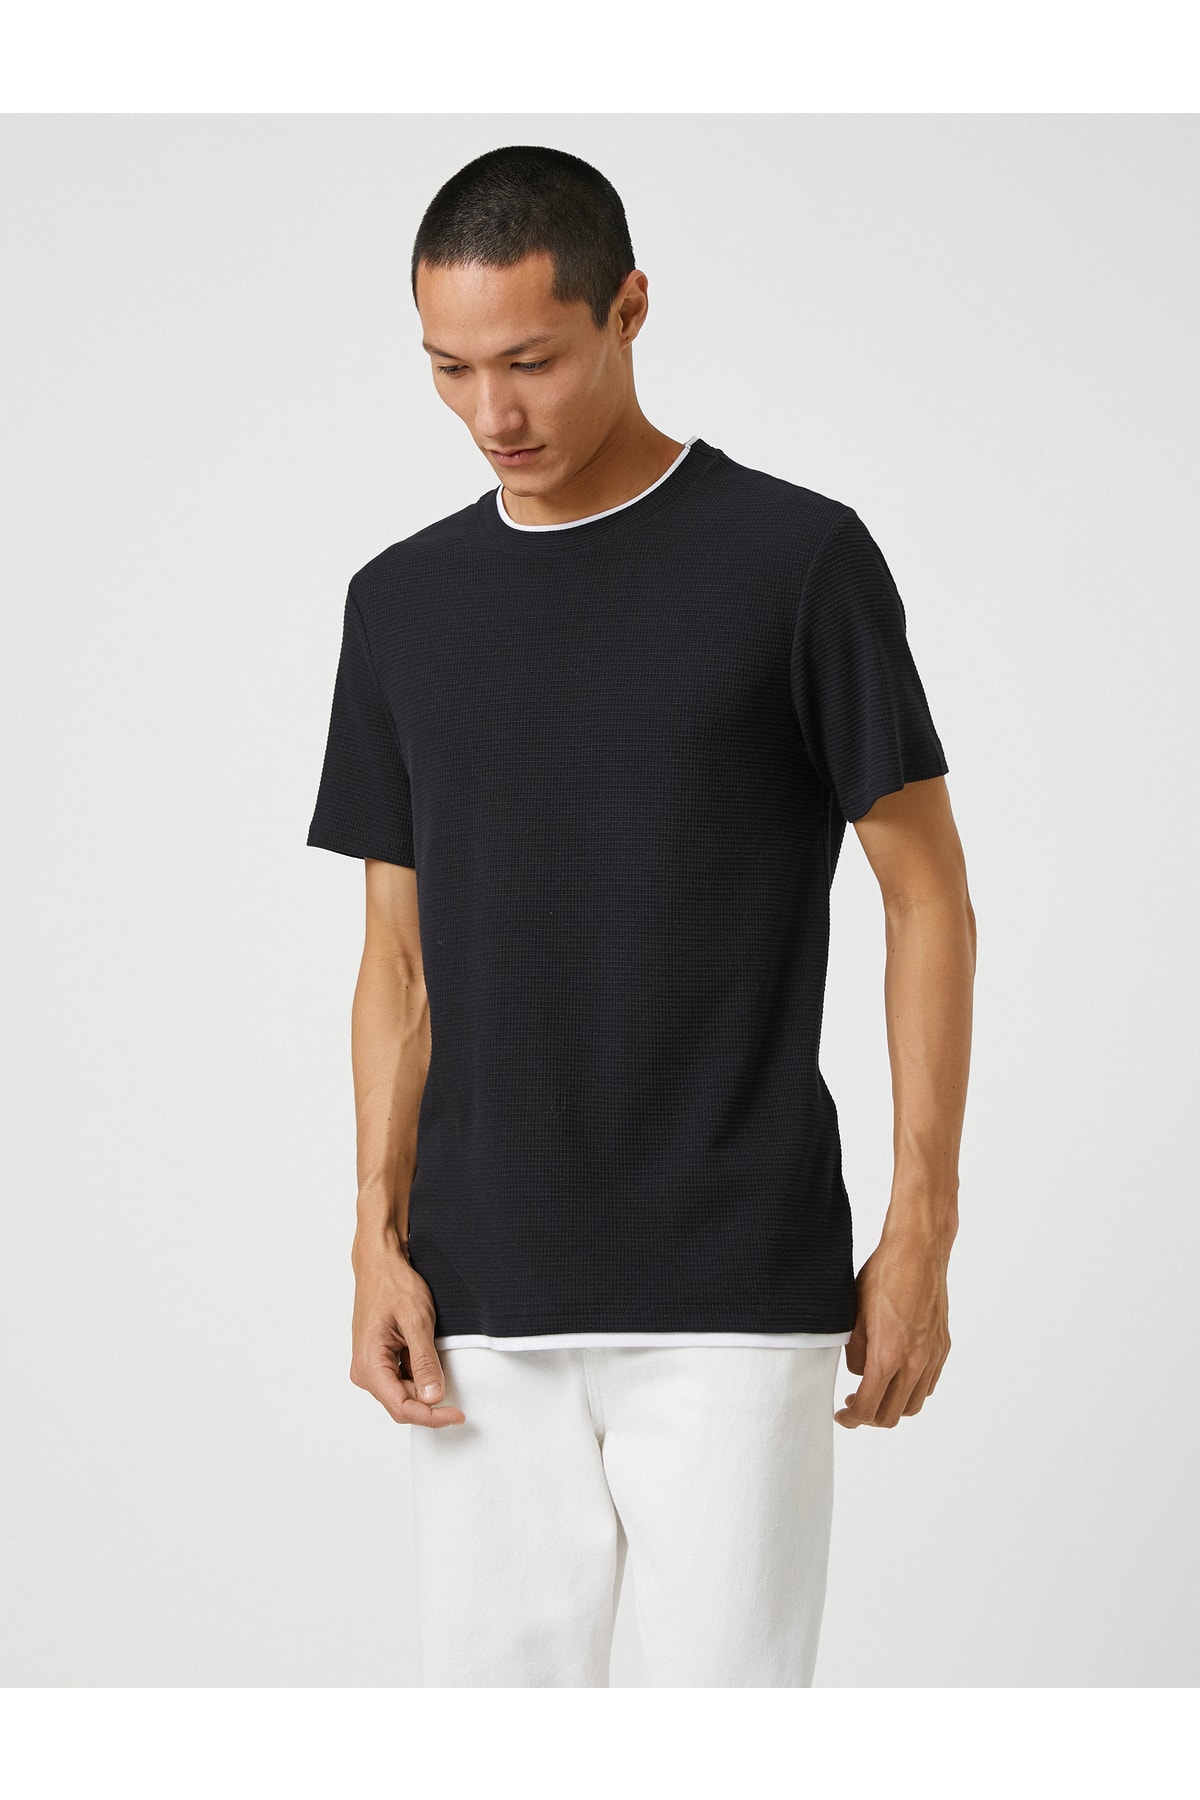 Koton Basic tkané tričko s krátkym rukávom s výstrihom posádky, Slim Fit.